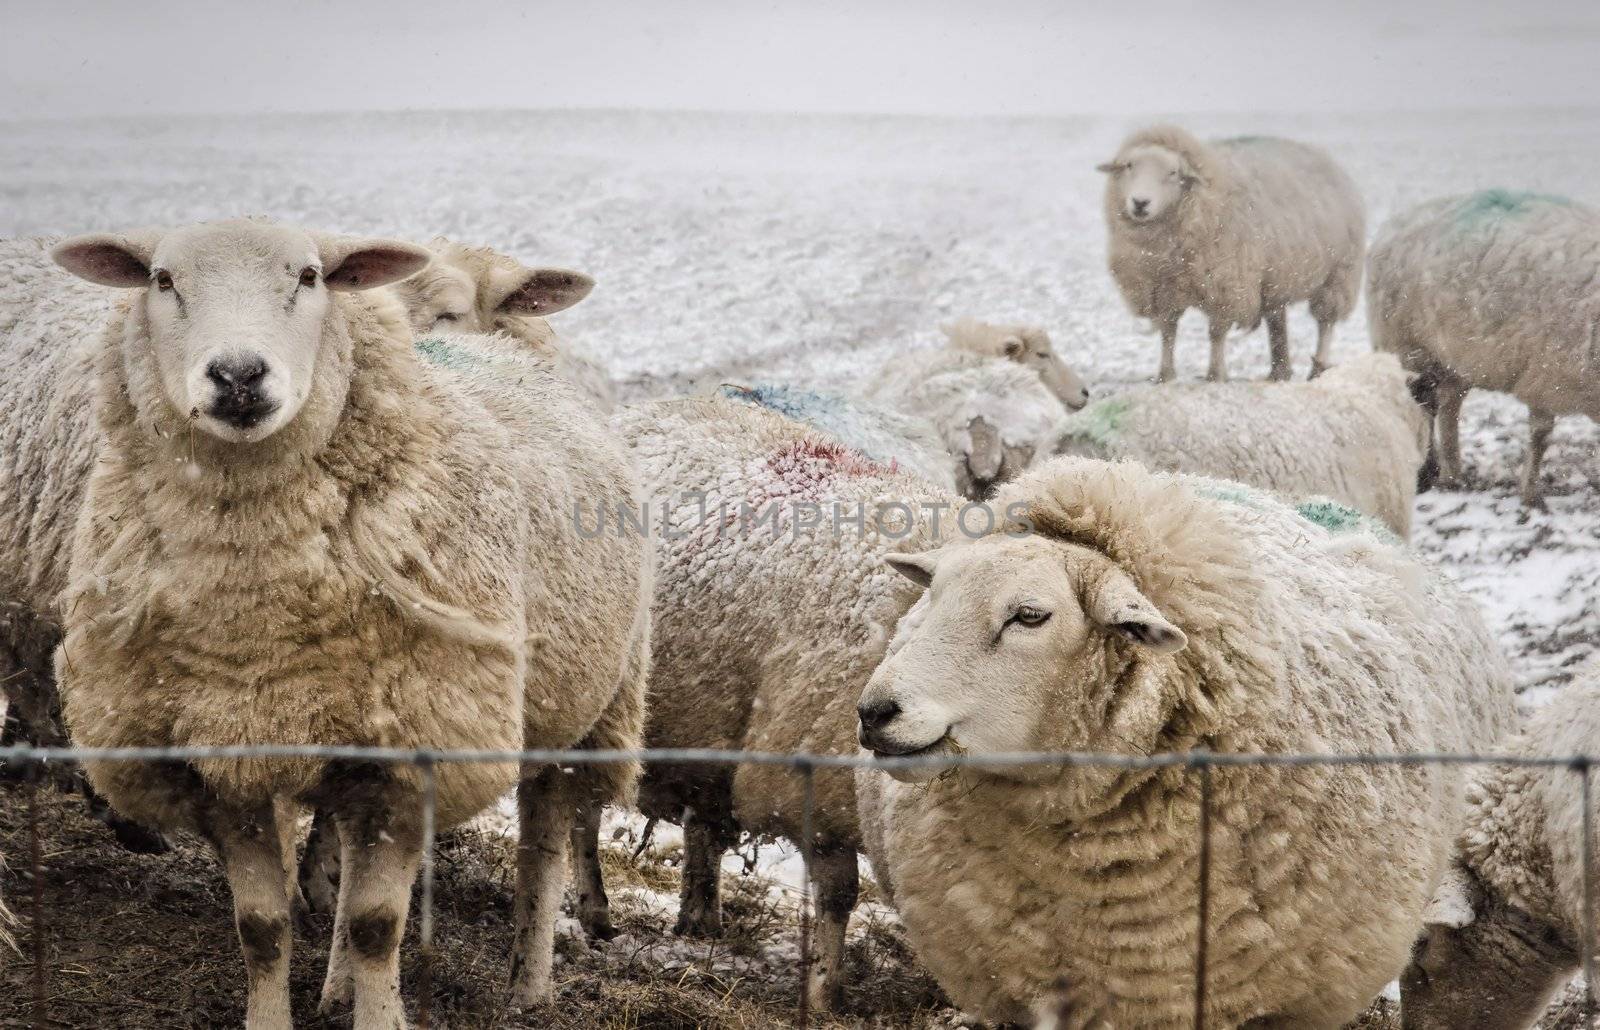 Sheep by Jez22